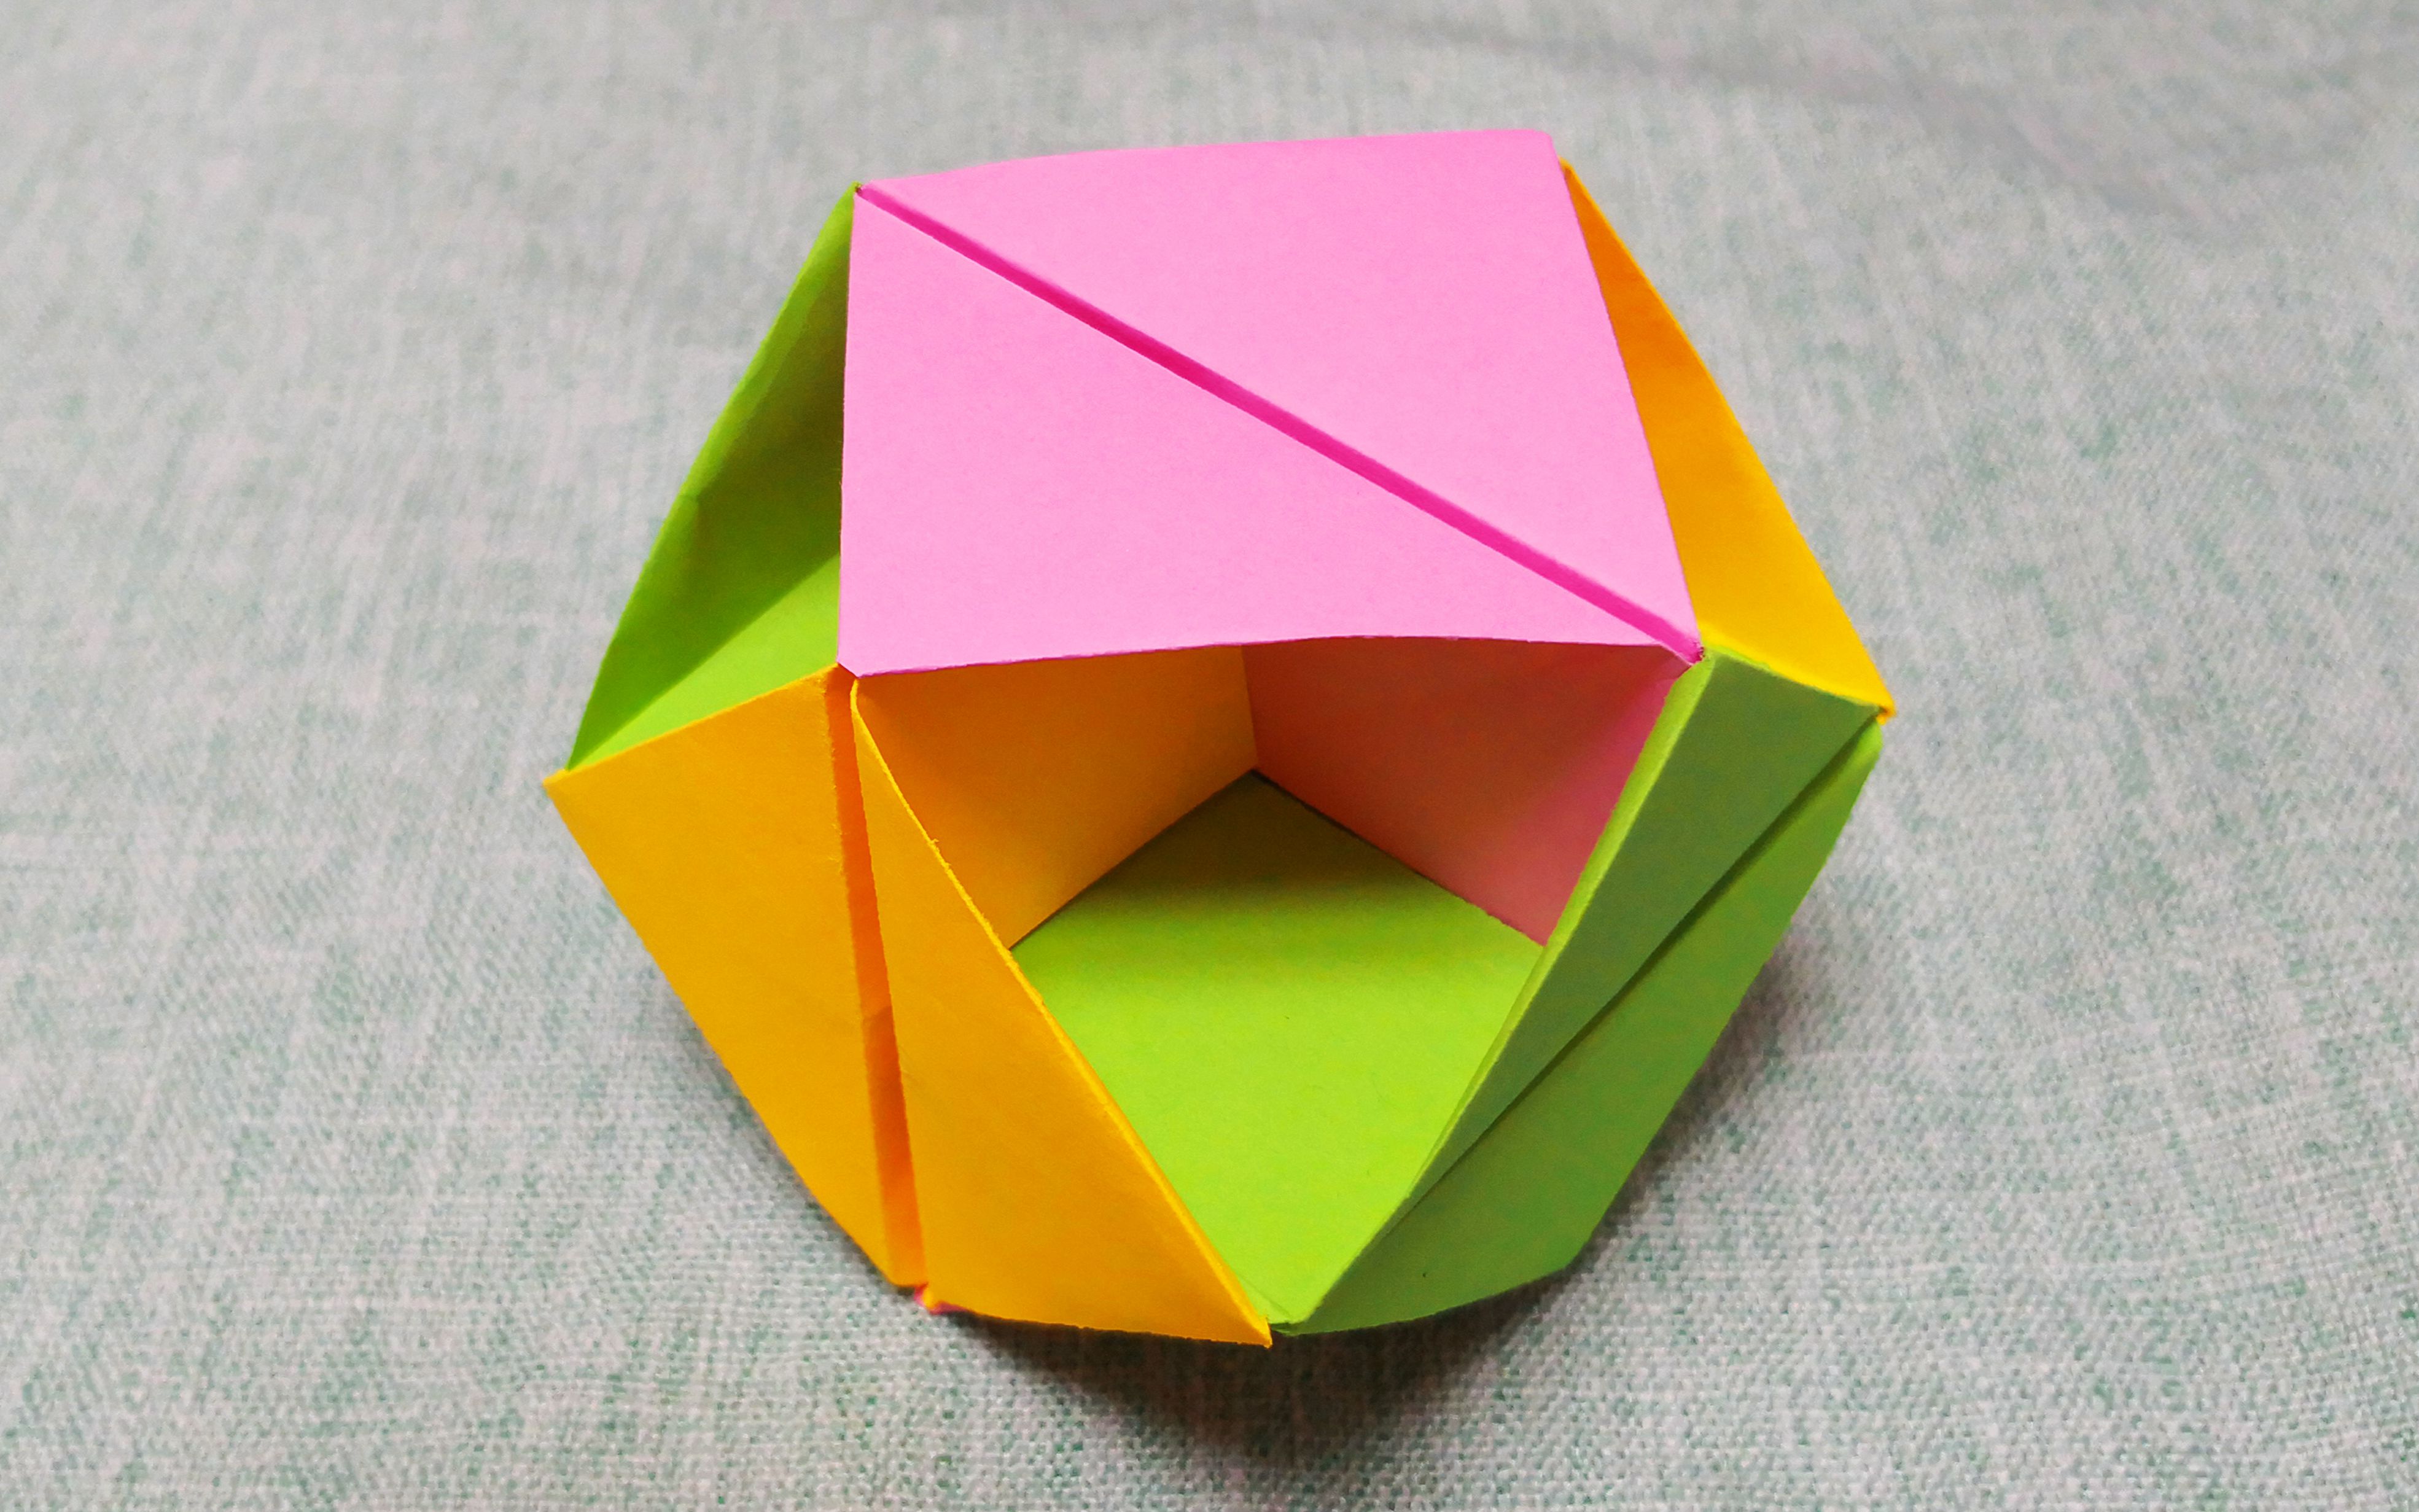 【组合折纸】手工制作六面立方体收纳盒,拥有14格收纳空间,简单实用